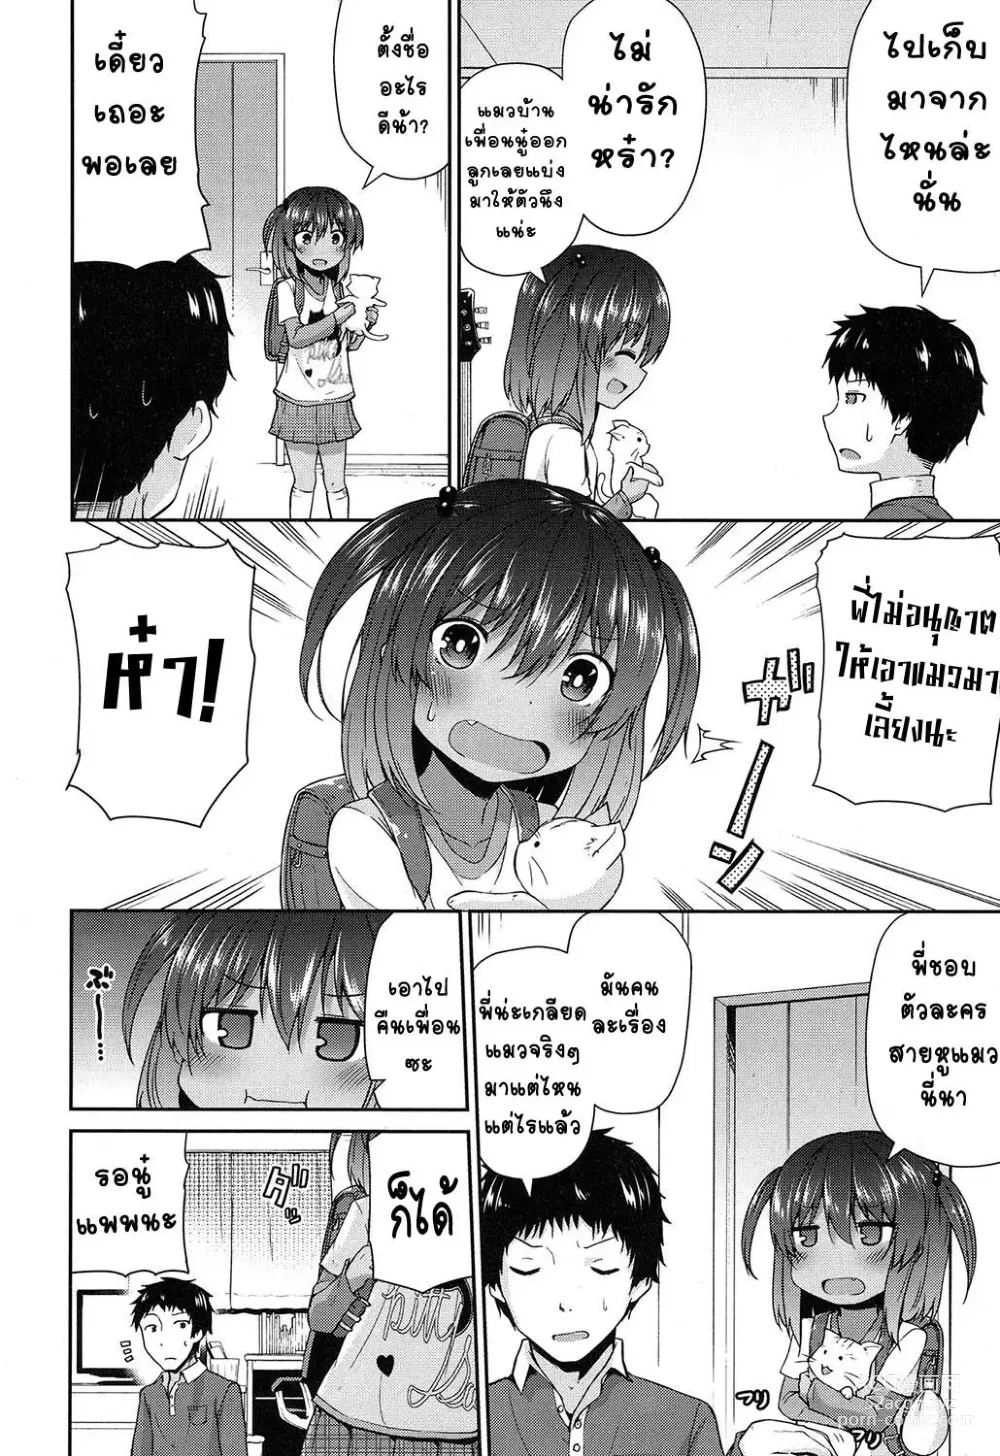 Page 2 of manga Waga Uchi no Neko Jijou